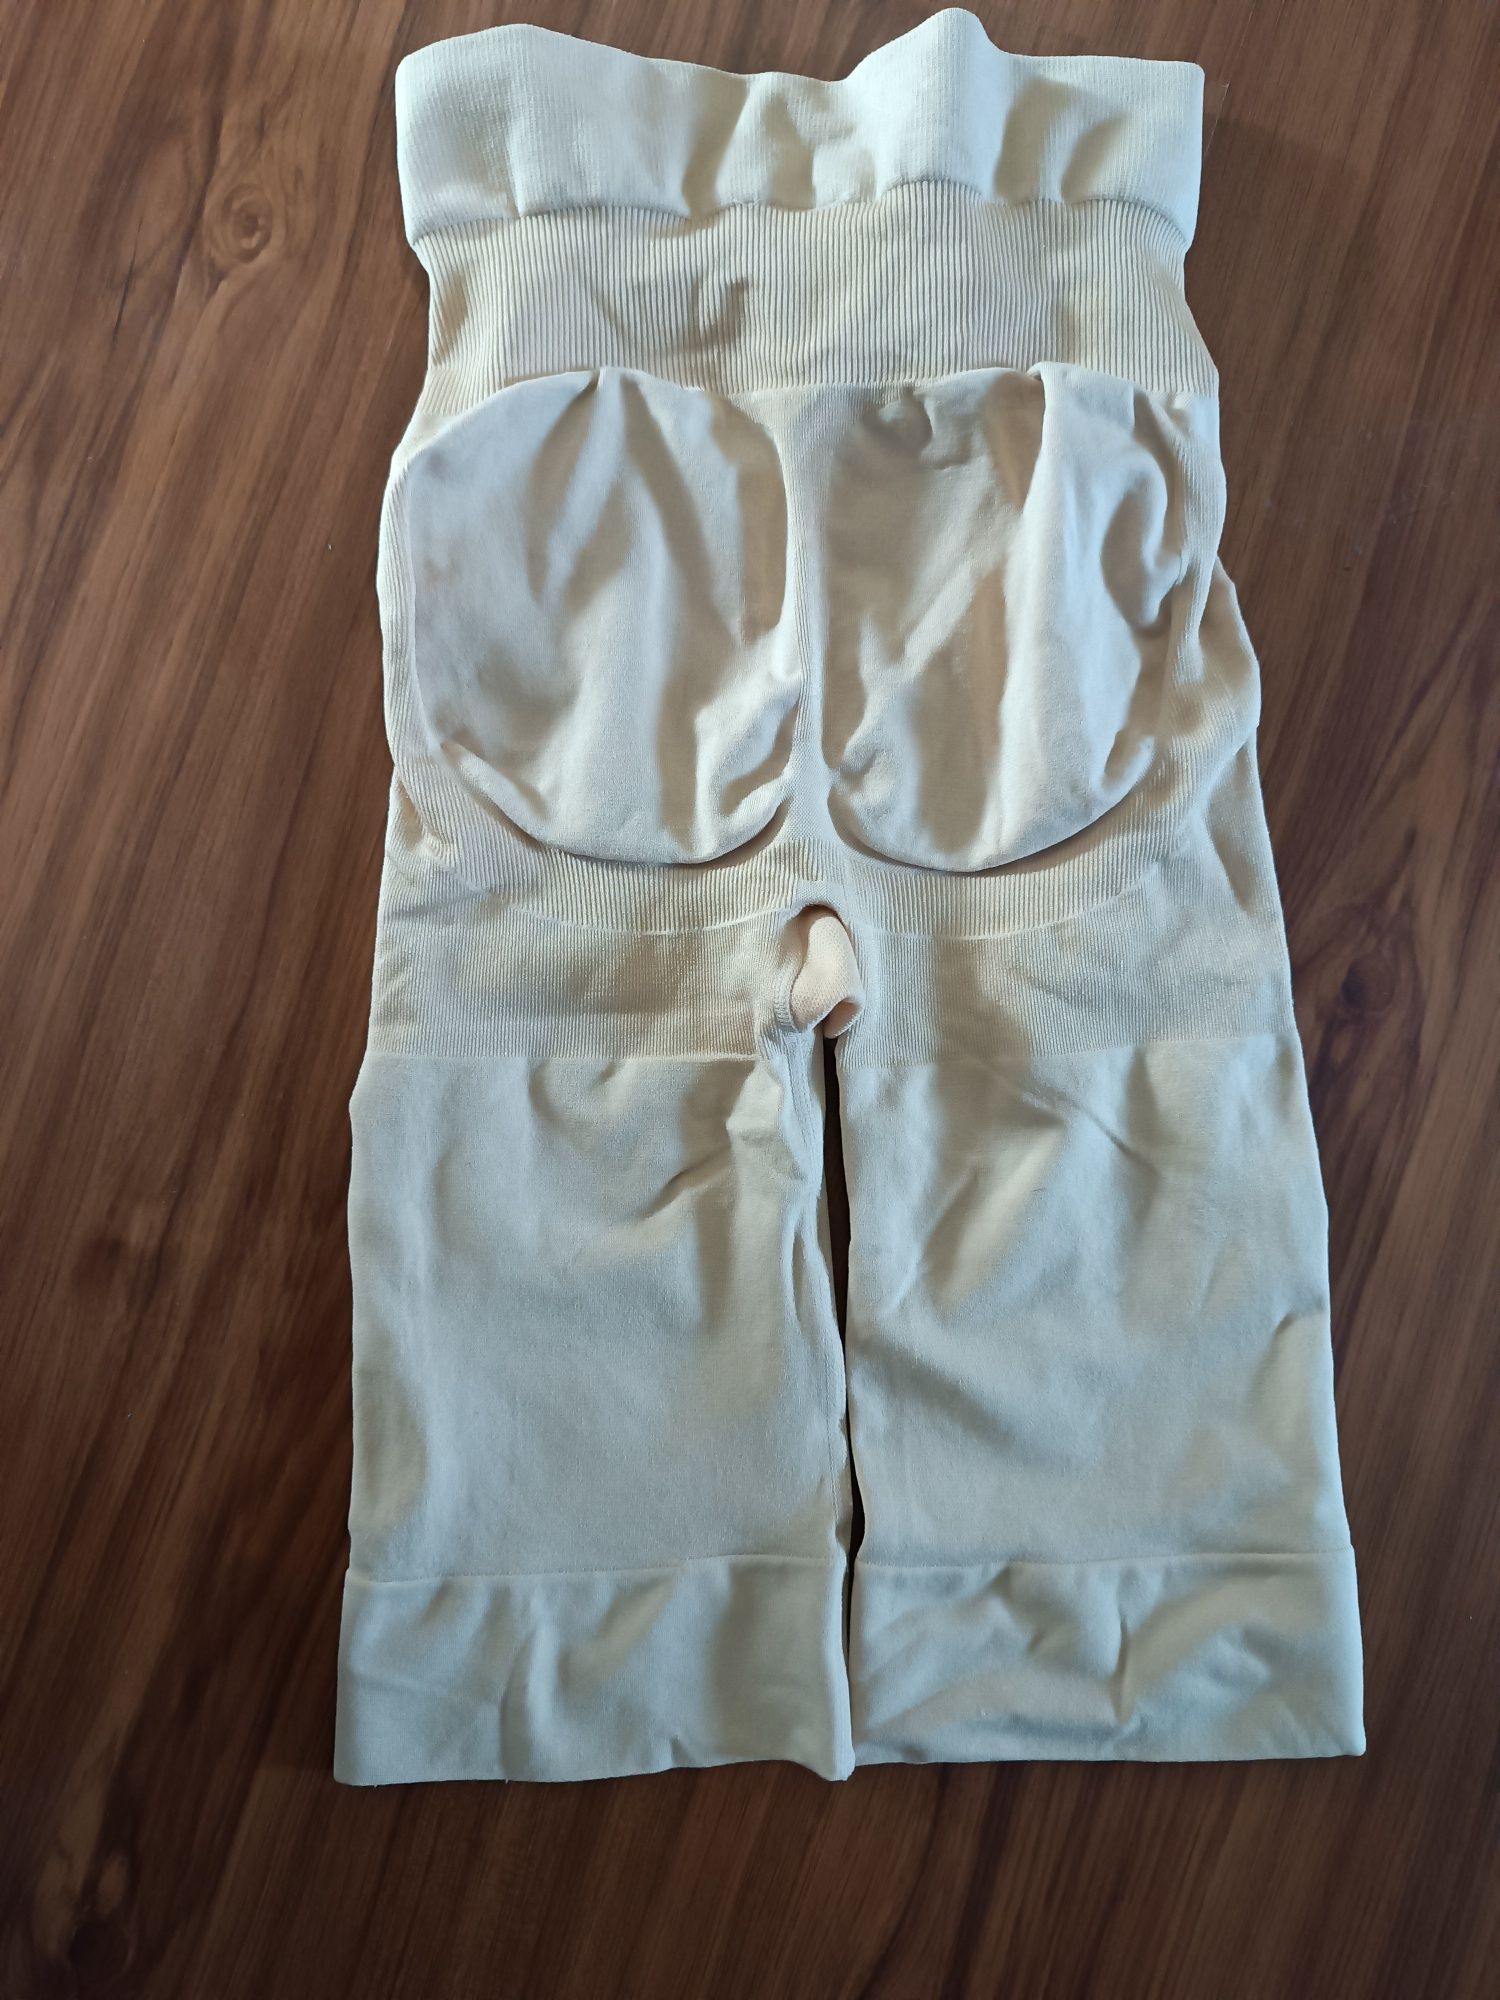 Утягуючі шорти корсет під плаття М, L, XL бразильська попа